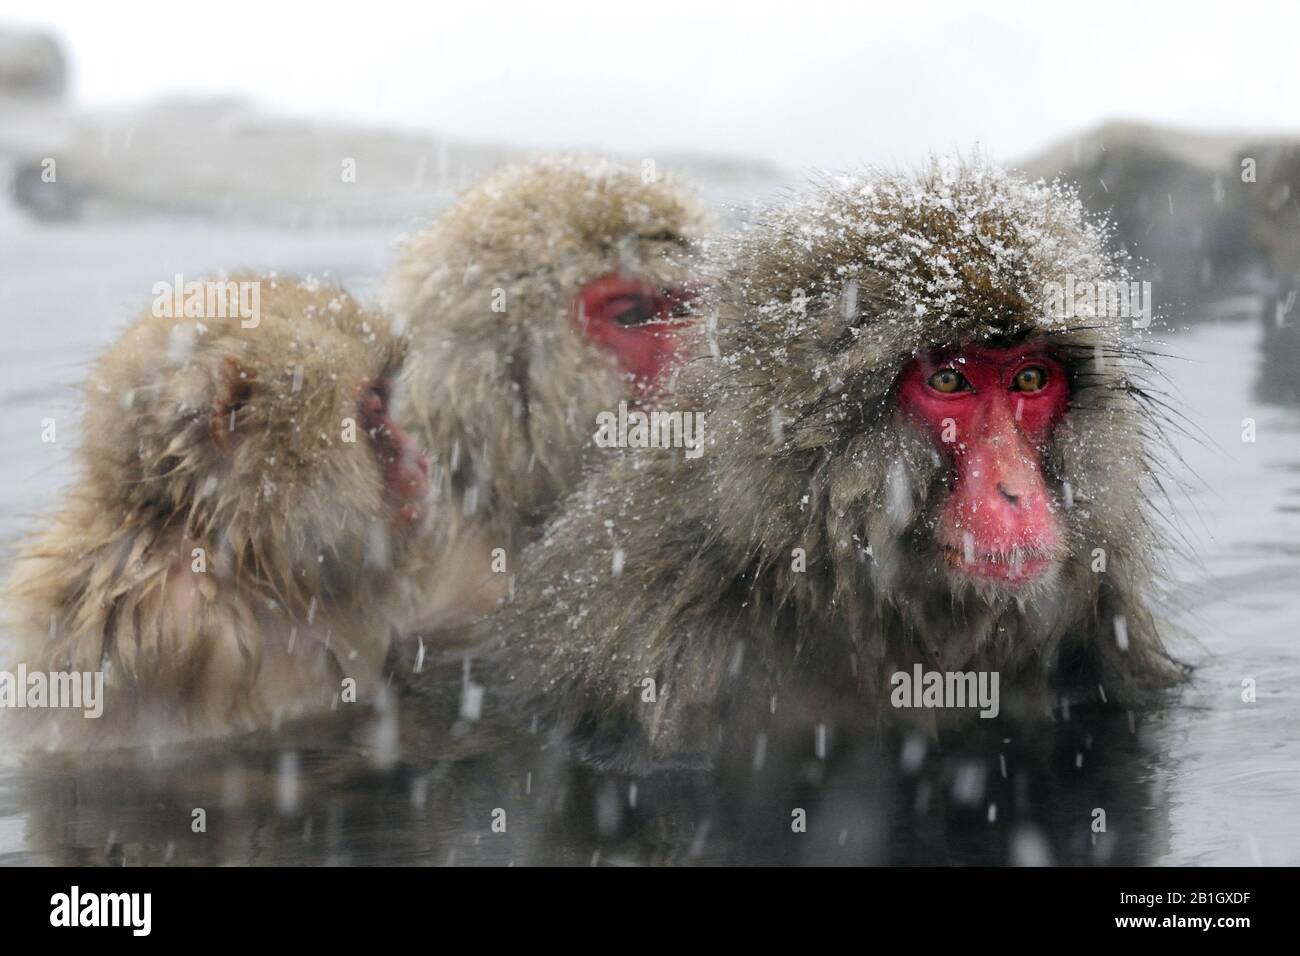 Macaque japonais, singe neige (Macaca fuscata), trois singes neige assis dans un printemps chaud pendant la neige tombée, Japon, Nagano, Jigokudani Yaen Koen Banque D'Images